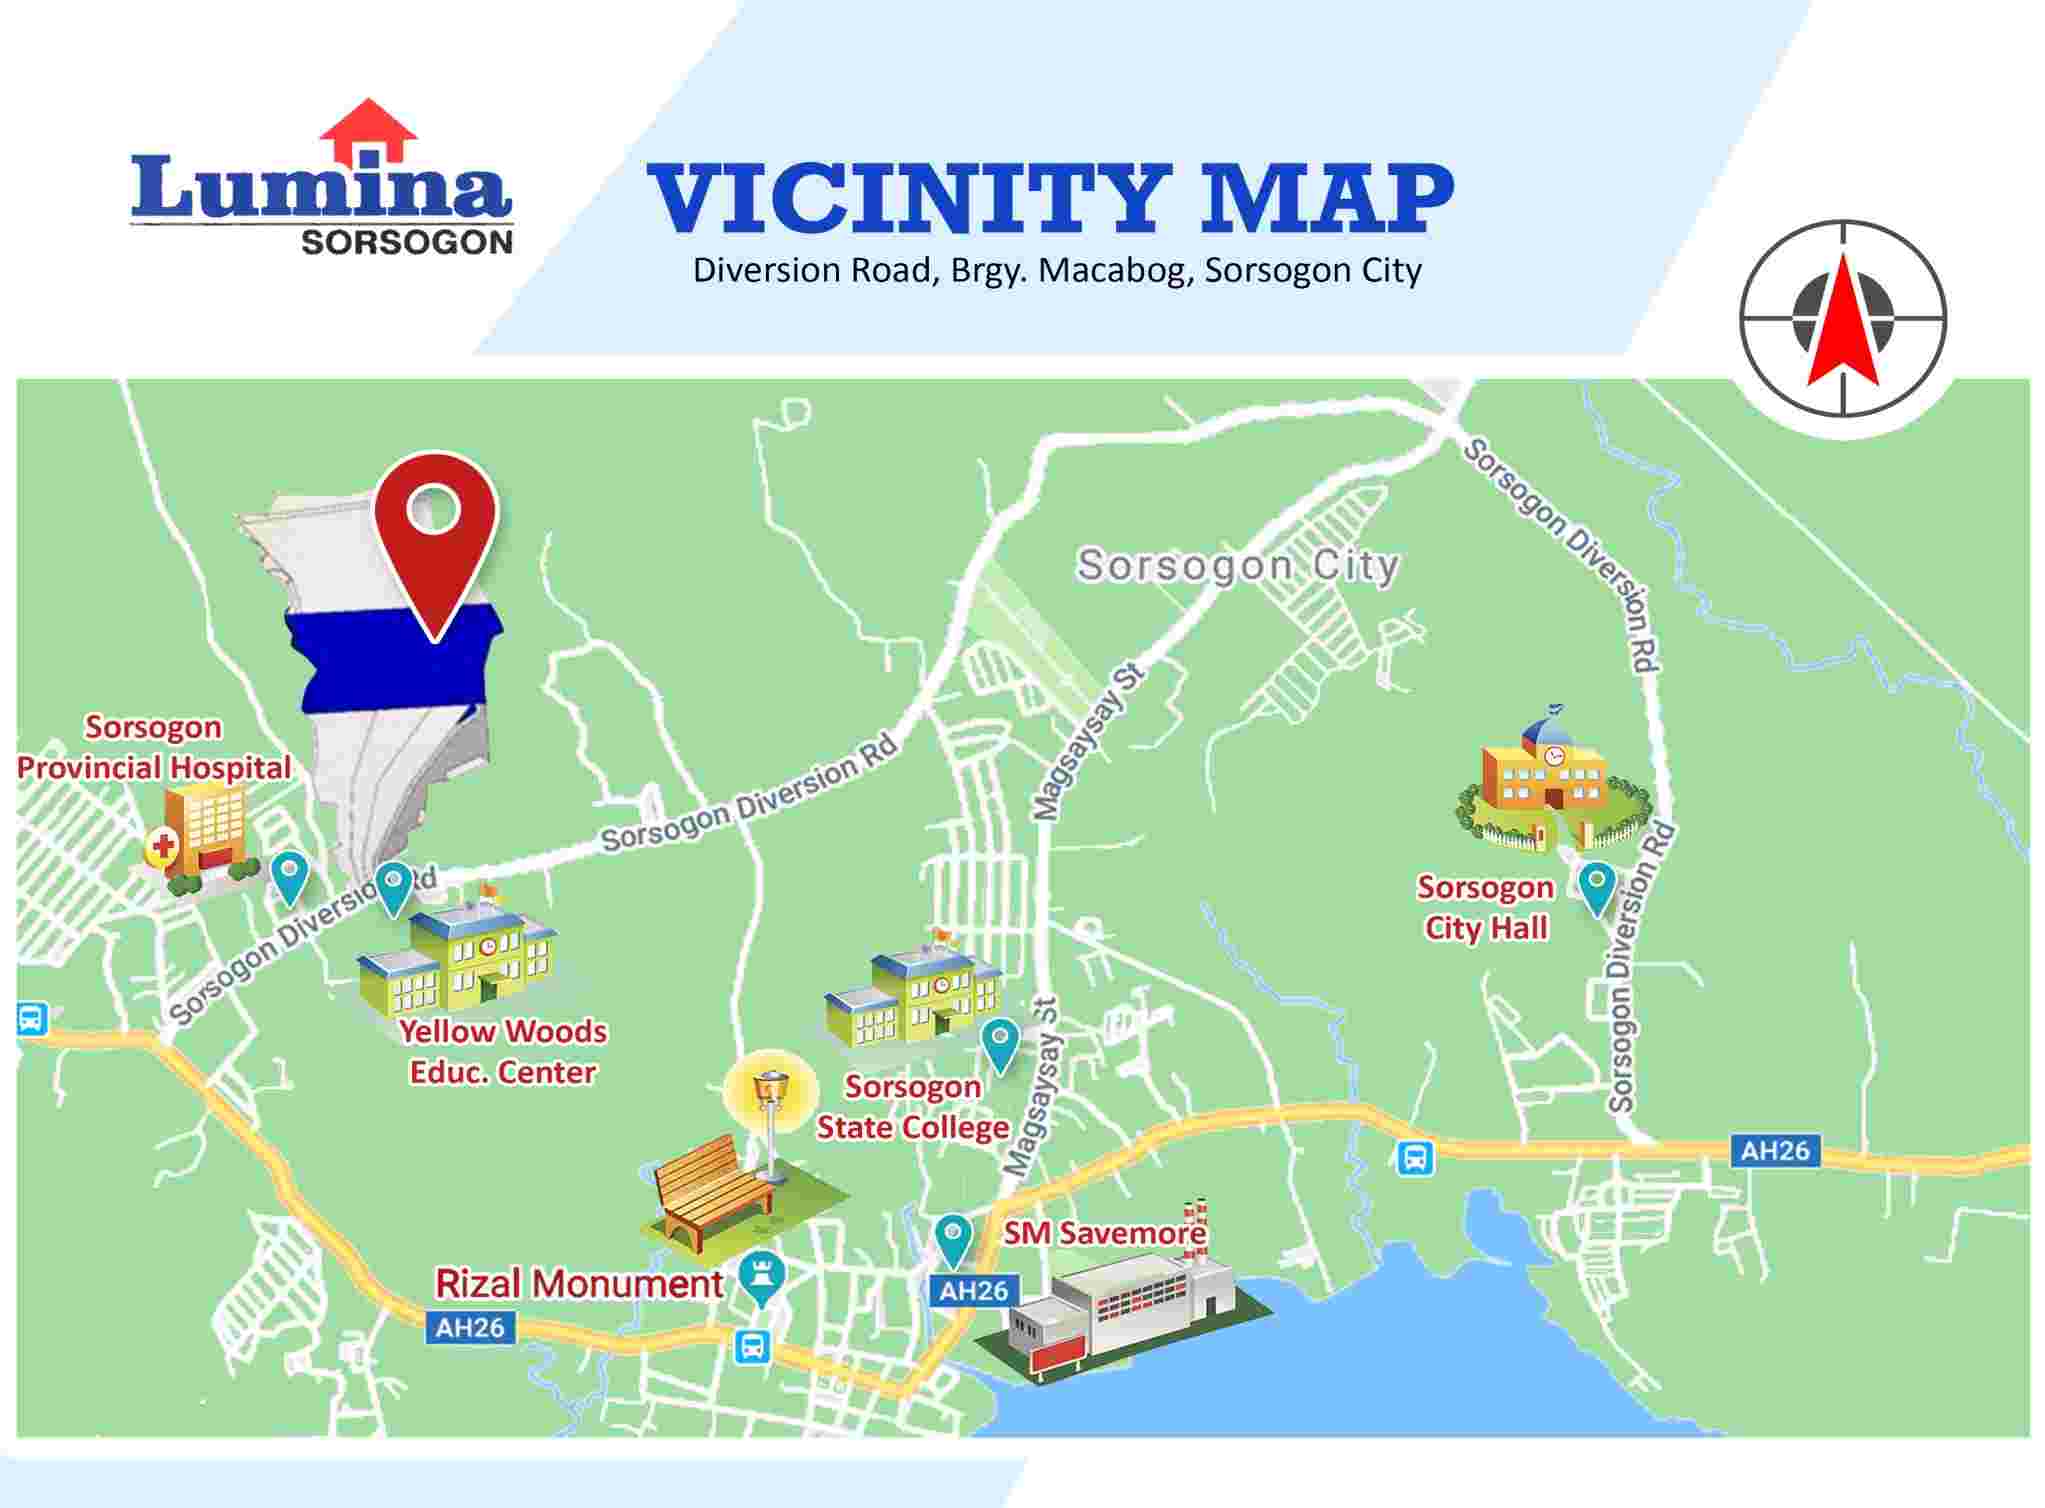 Vicinity-Map-1660026456.jpeg